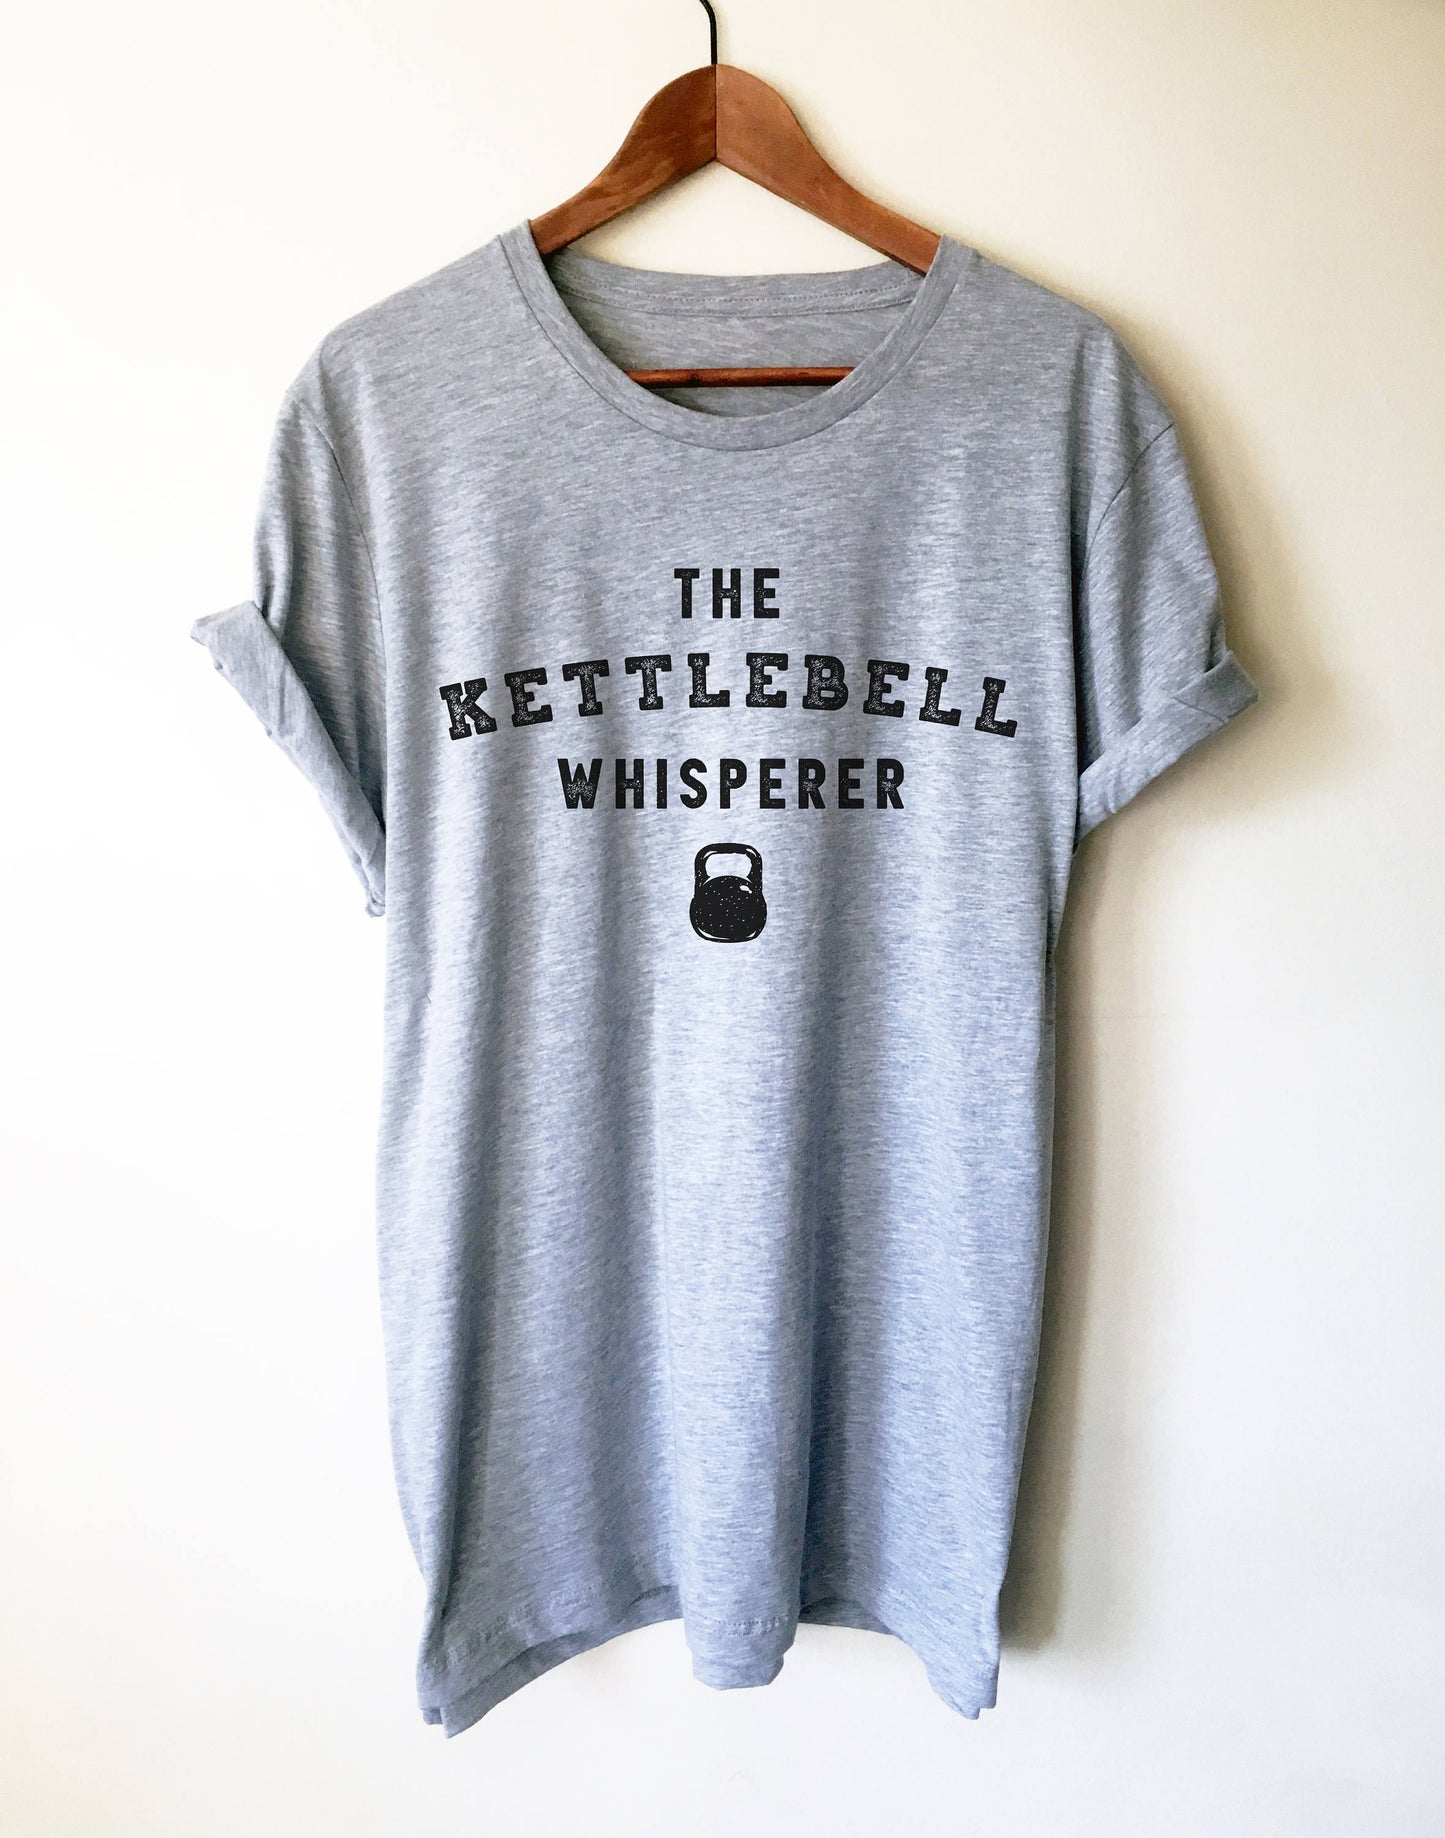 The Kettlebell Whisperer Unisex Shirt - Kettlebell shirt, Kettlebell fitness, Kettlebell workout, Gym shirt, Workout shirt, Fitness gift